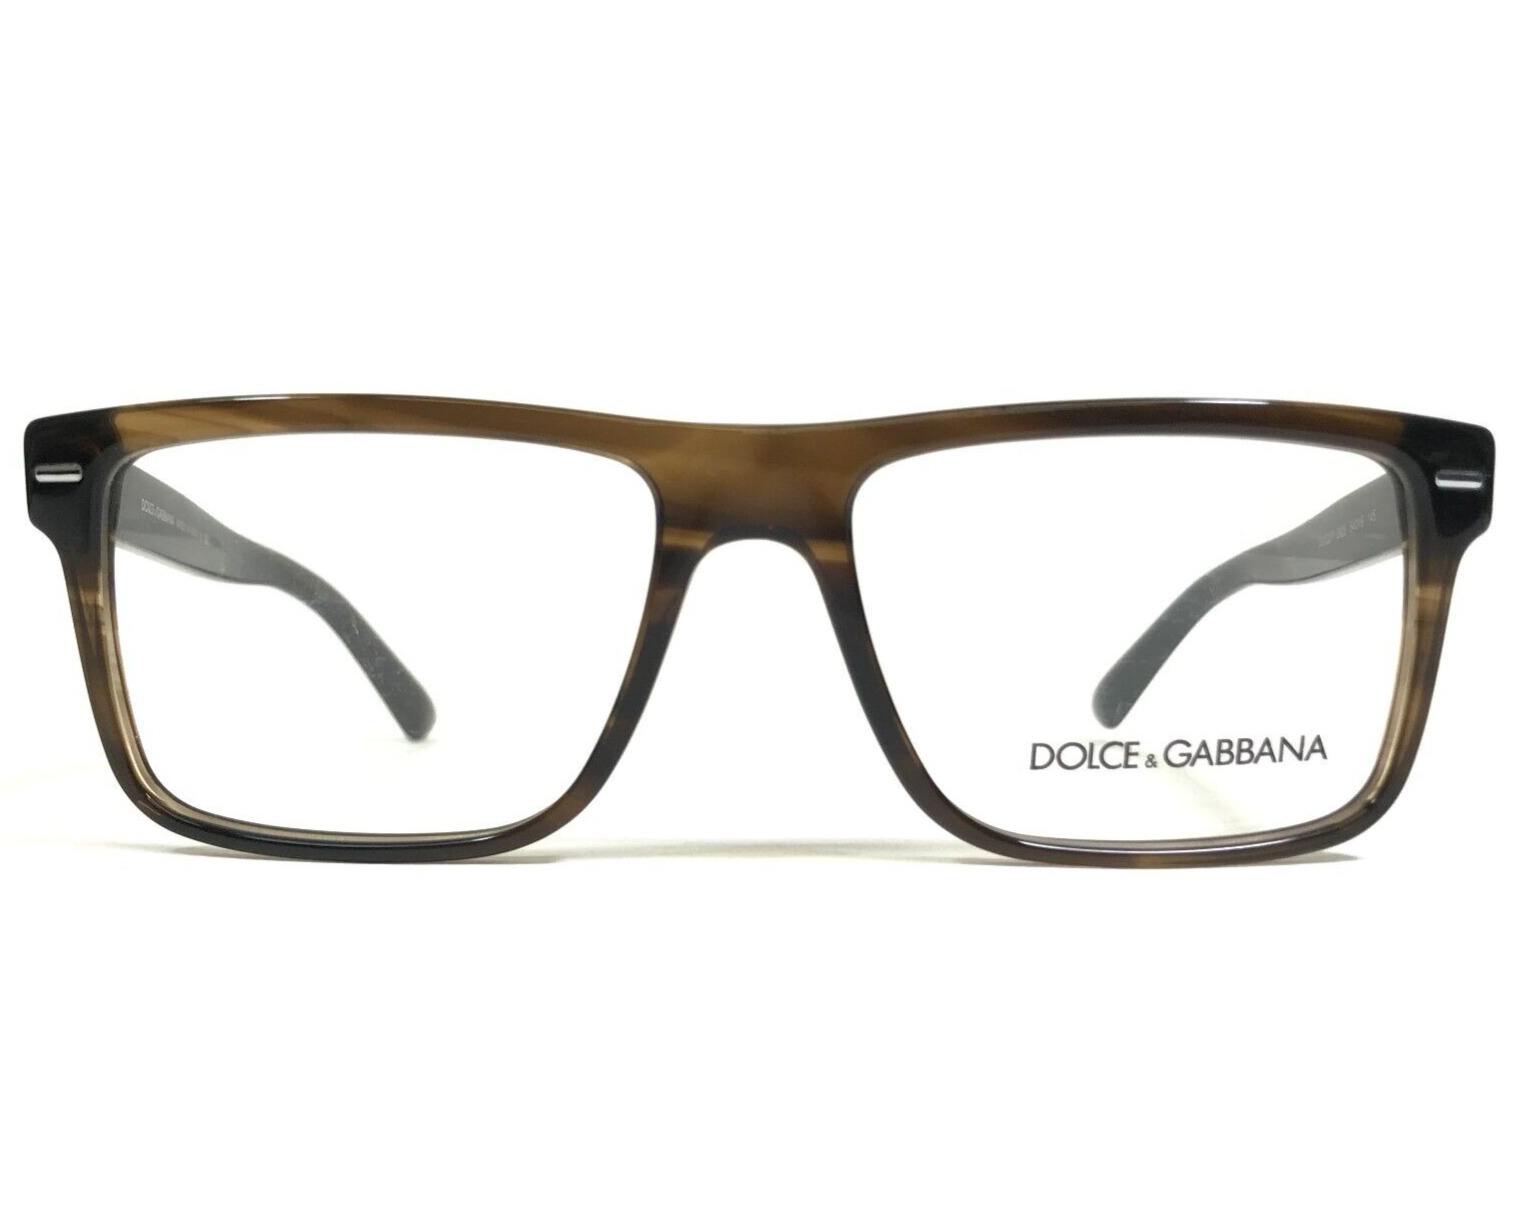 Dolce & Gabbana Eyeglasses Frames DG3227 2925 Brown Horn Square 54-16-145 - $121.33